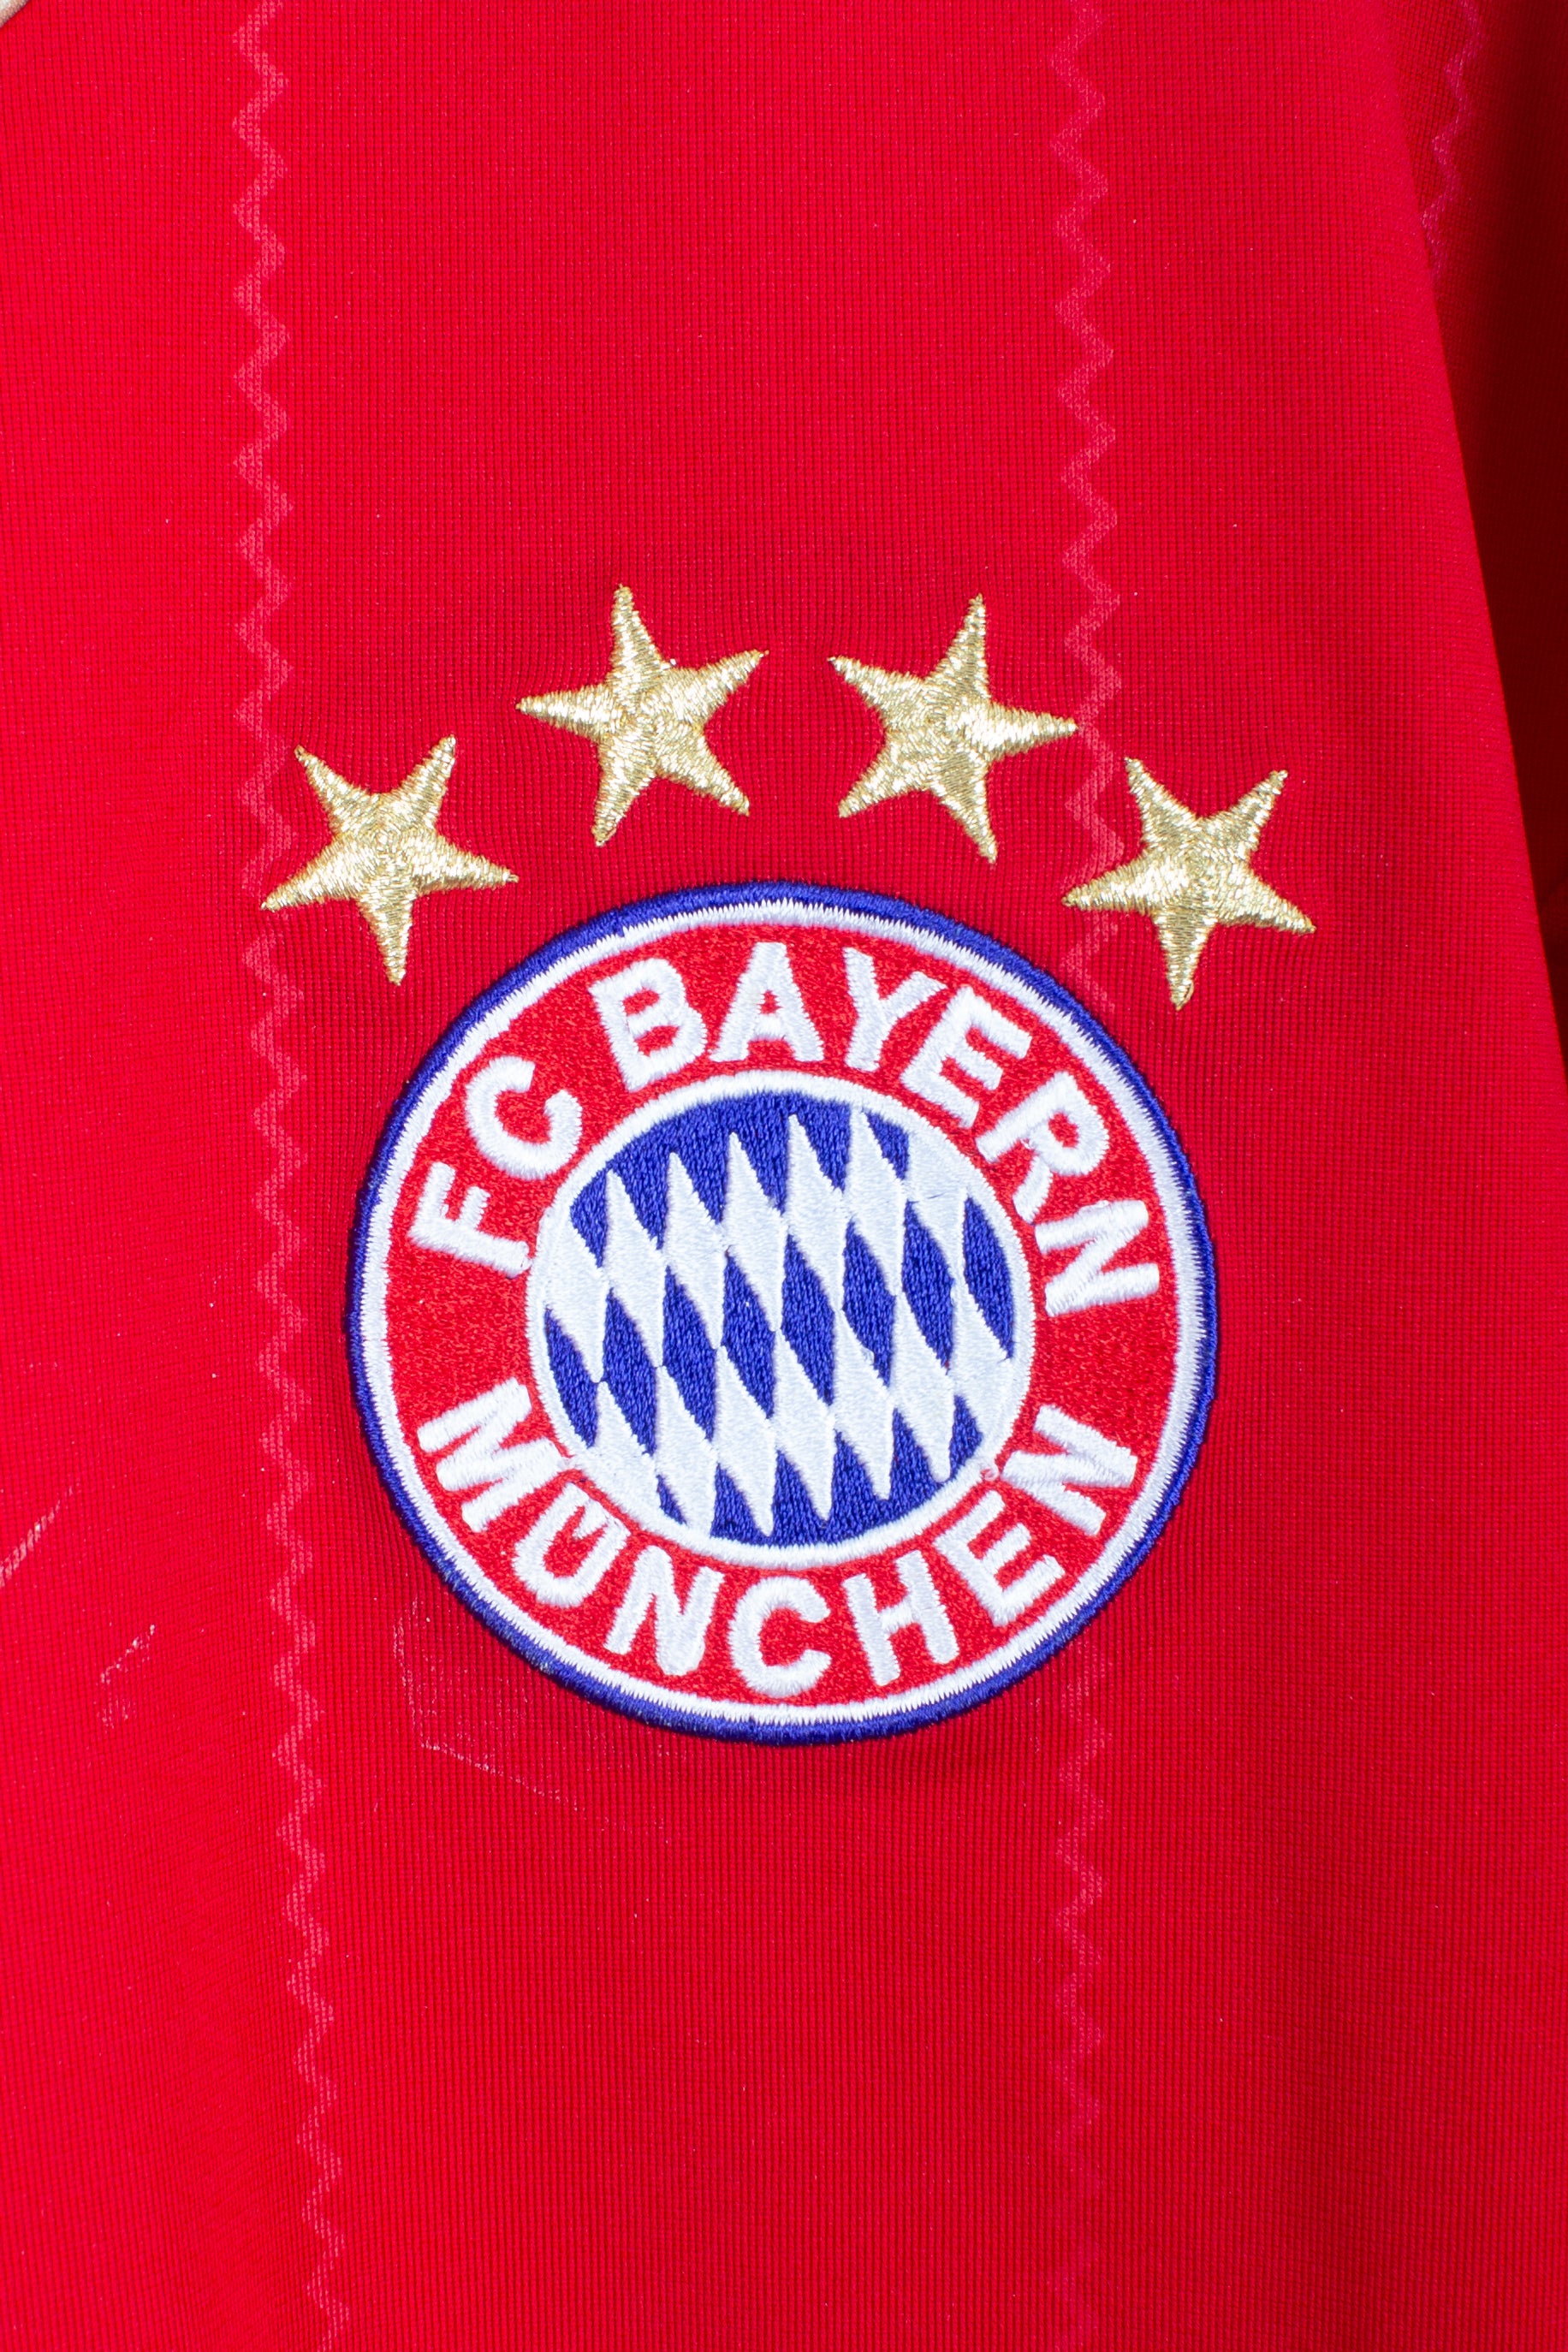 Bayern Munich 2011/13 Home Shirt (Schweinsteiger #31) (XL)